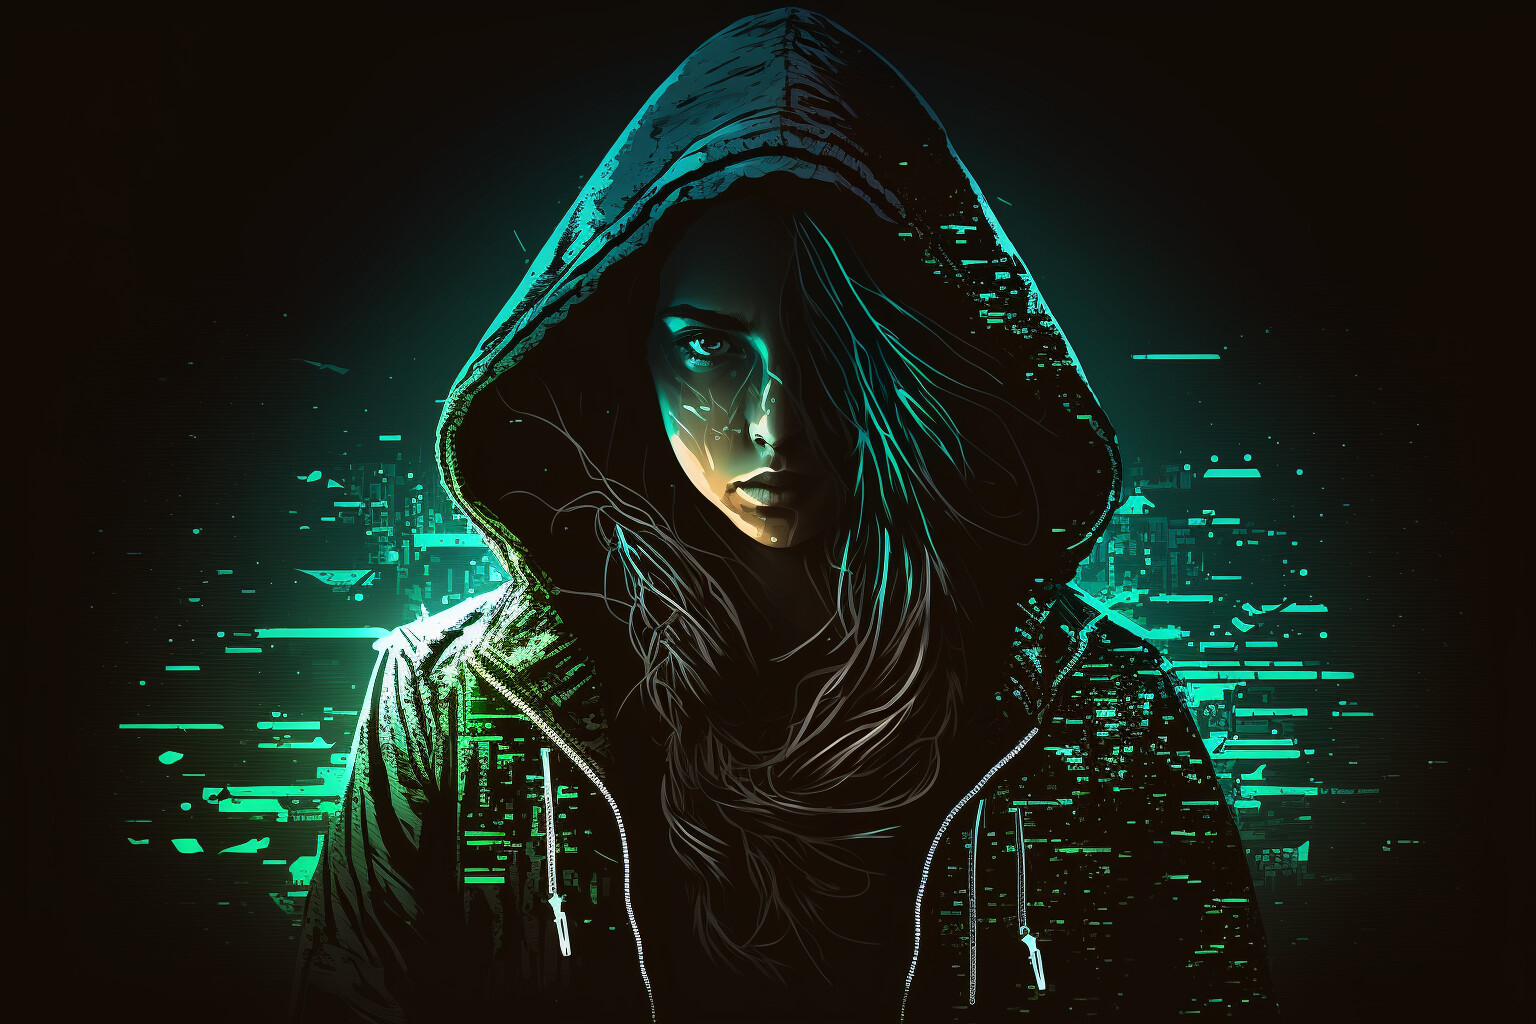 littlebigcolours-ferret-female-hacker-wearing-hoodie-dark-spotlight-glowing-elem-a3fc19e5-5ea3-481d-b8ce-70a30262d15a.jpg